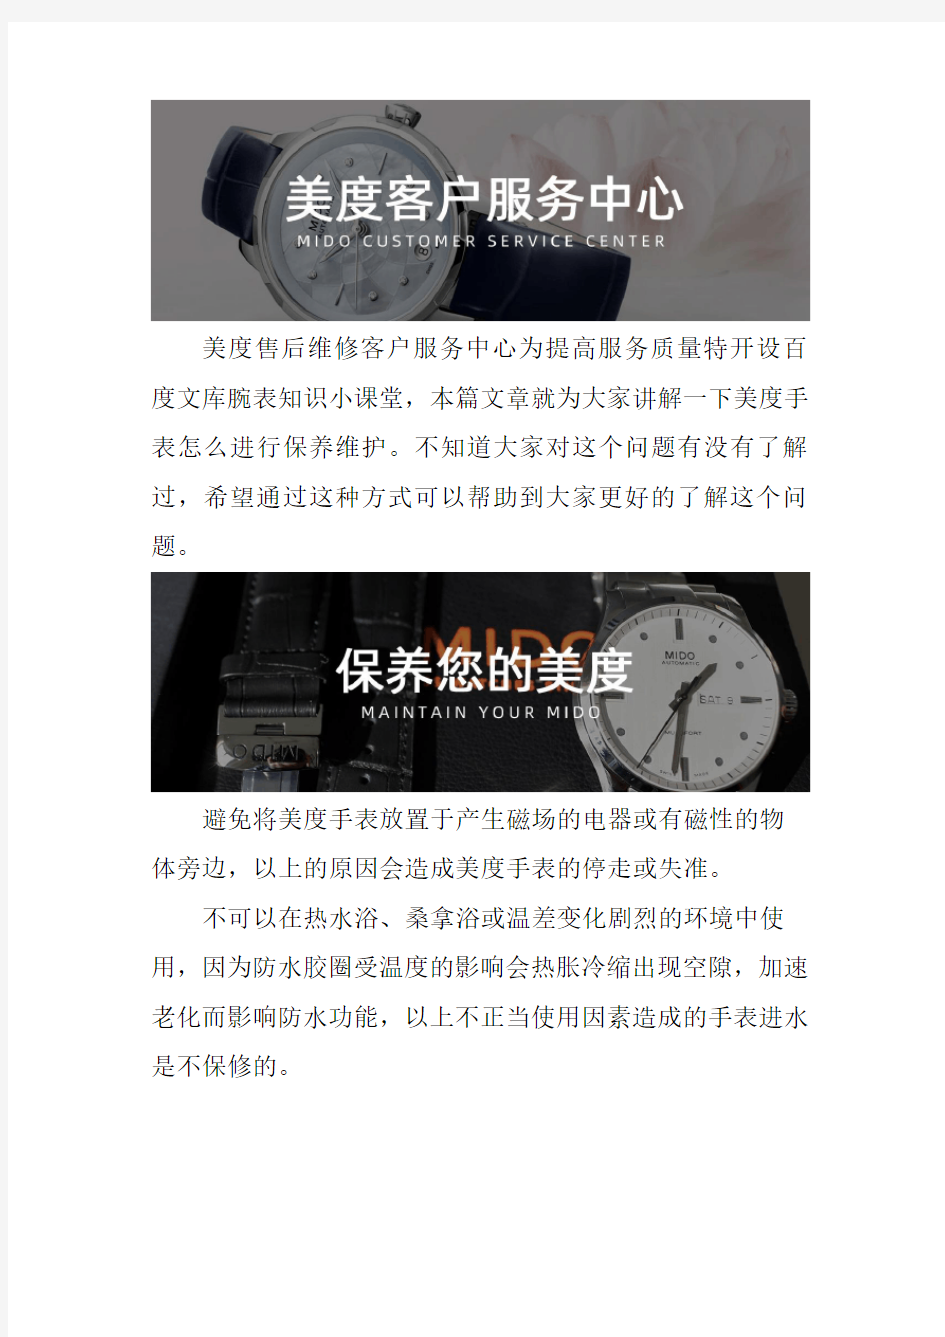 郑州美度手表售后维修服务中心-- 美度手表怎么进行保养维护